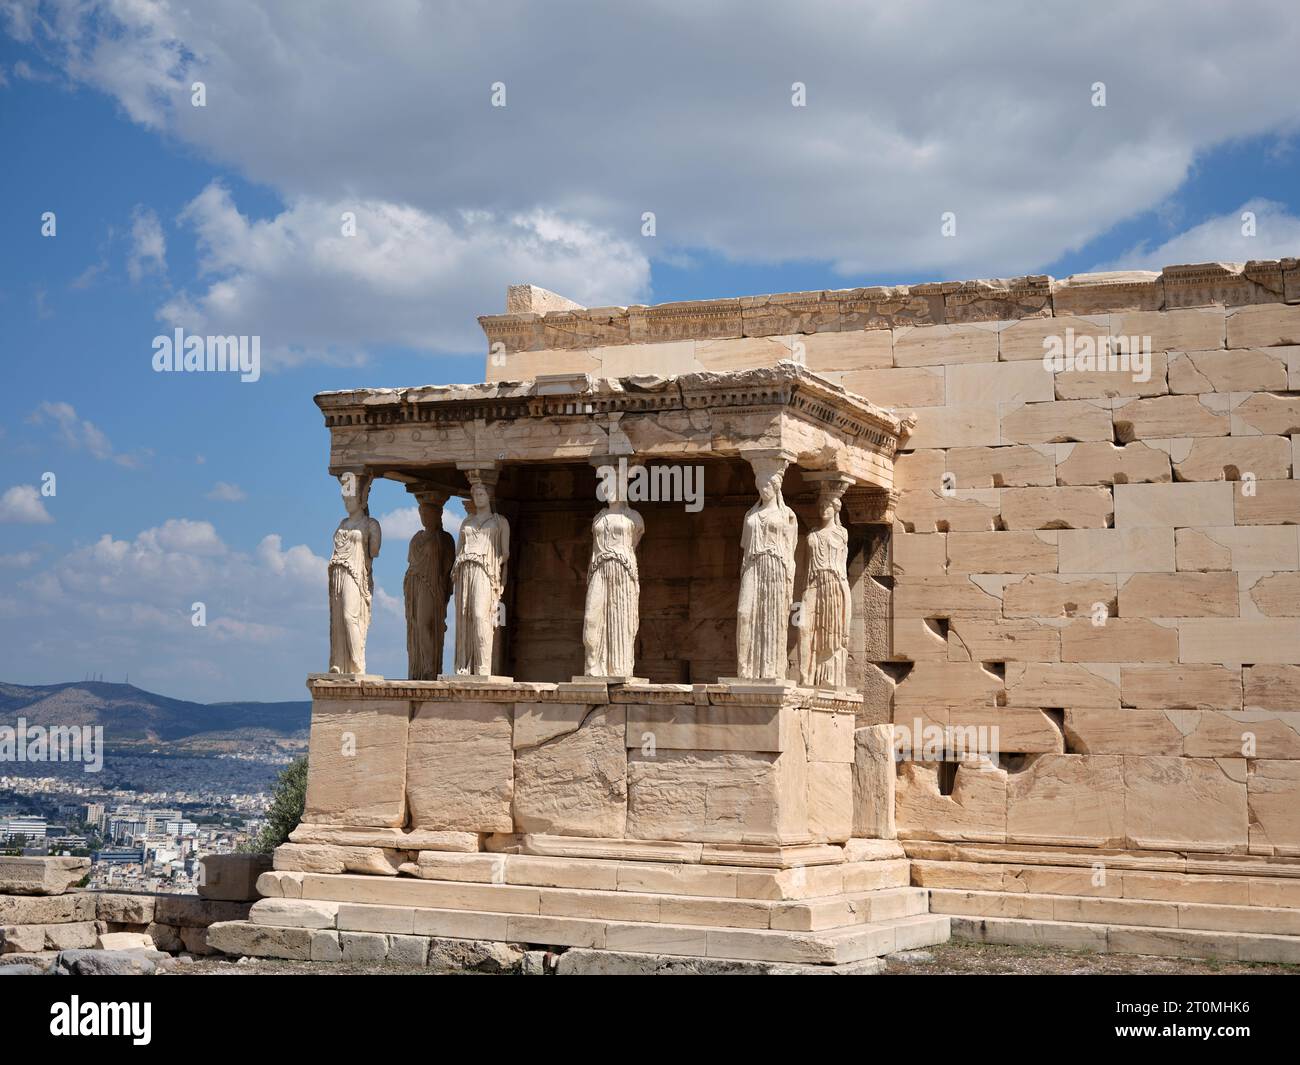 Les caryatides sont l'un des temples de l'Acropole d'Athènes (Grèce), un témoignage de l'art et de la culture grecs anciens. Banque D'Images